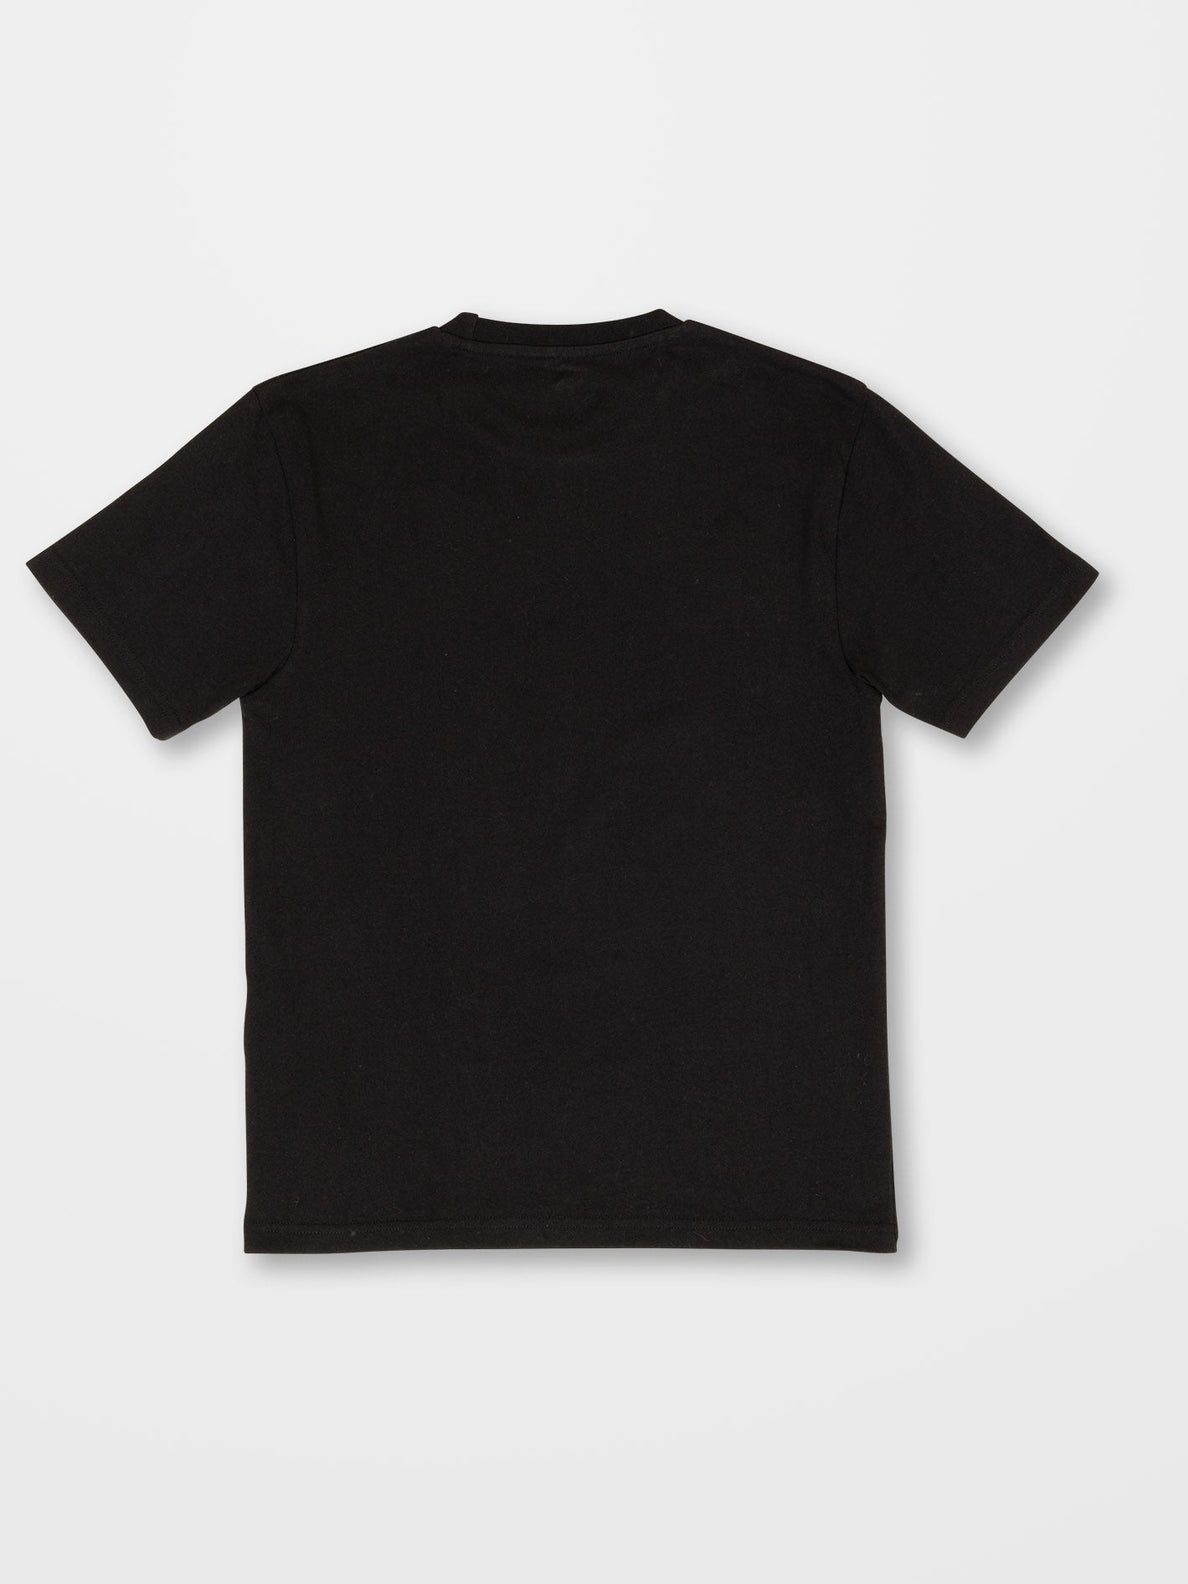 Alstone T-Shirt - Kinder Deutschland - BLACK - Volcom